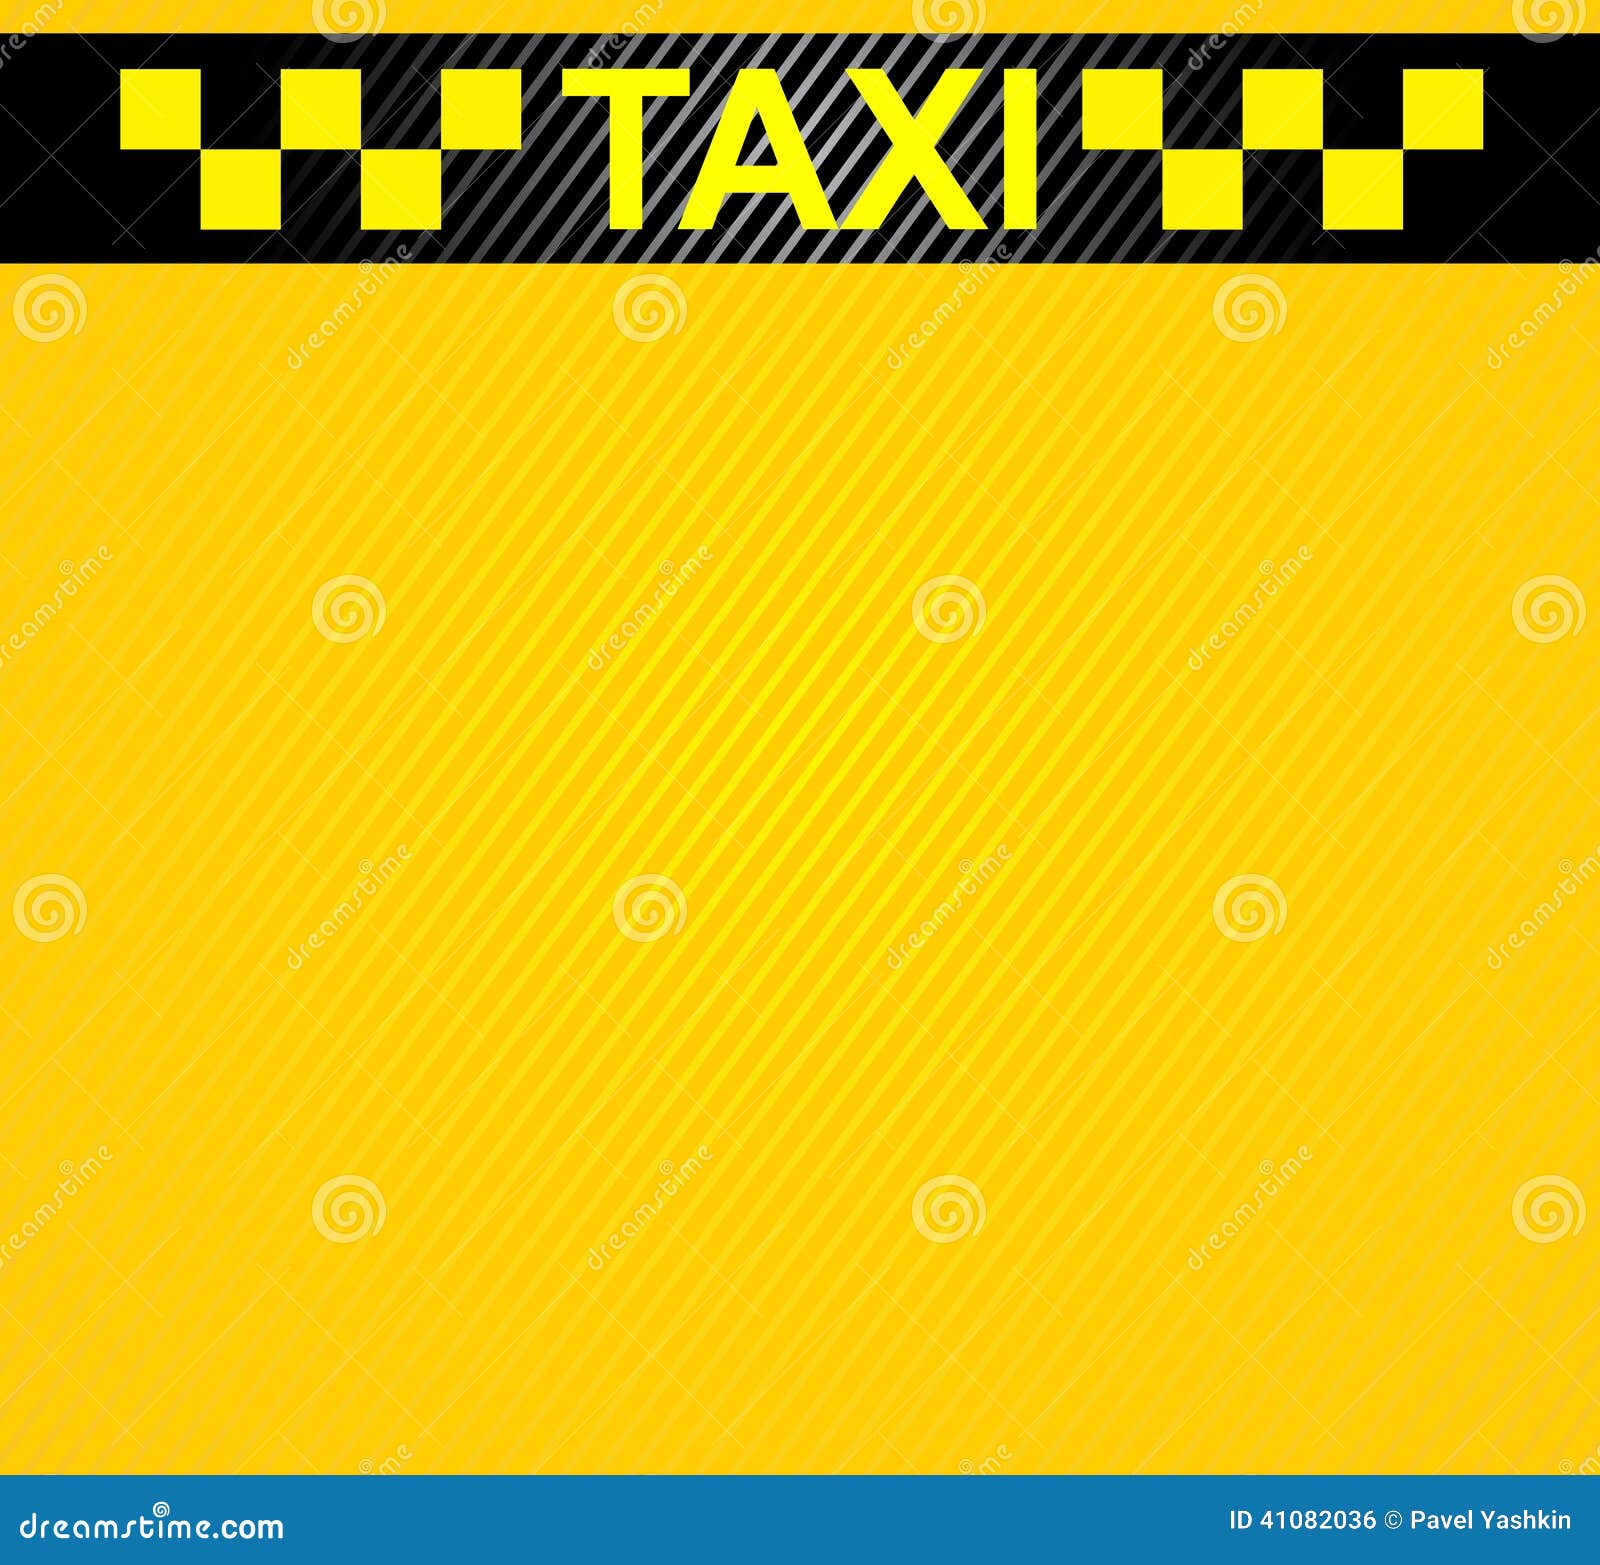 Фон для объявления такси